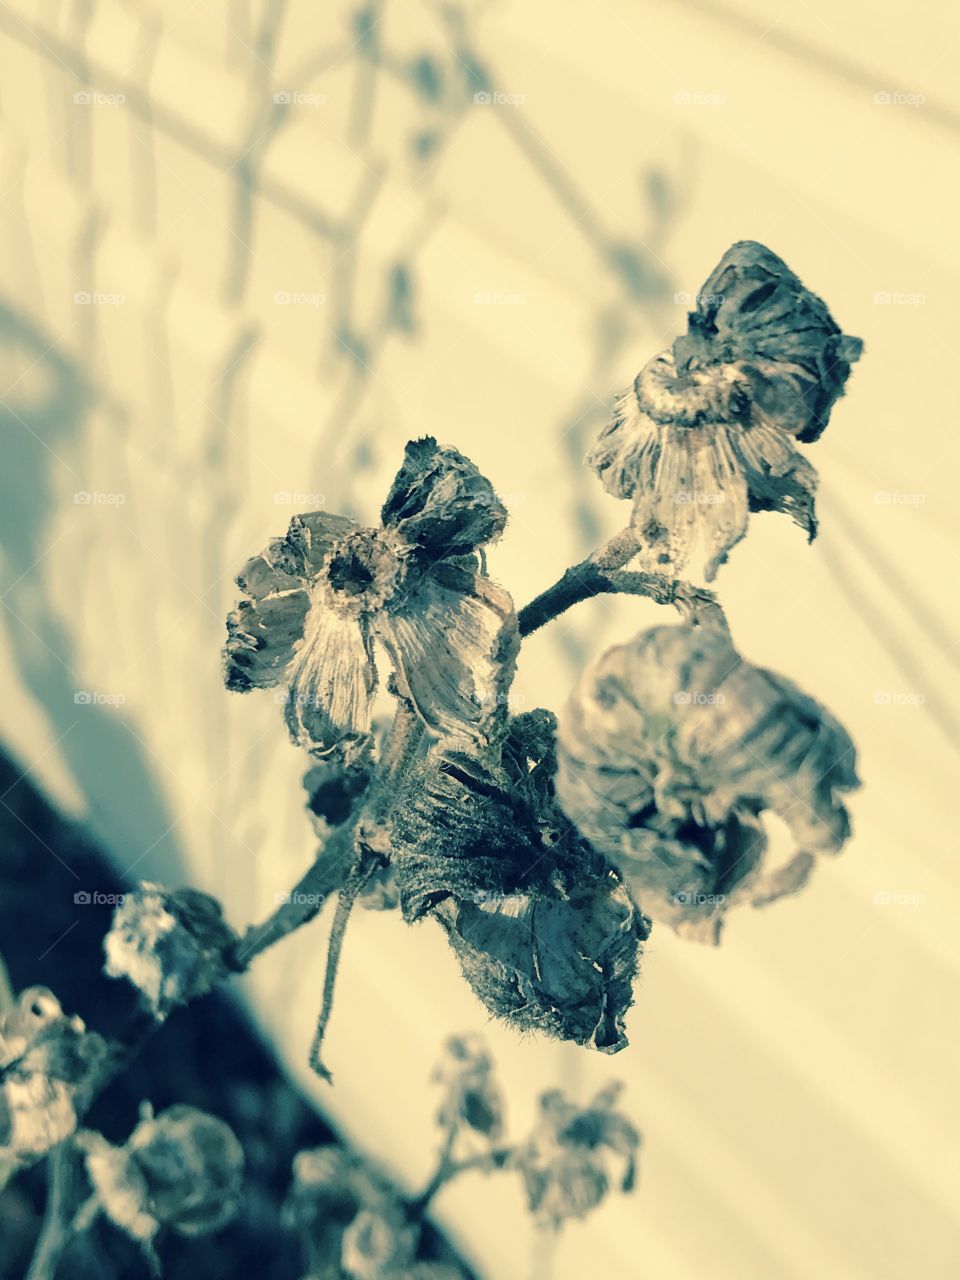 Monochrome dried flowers